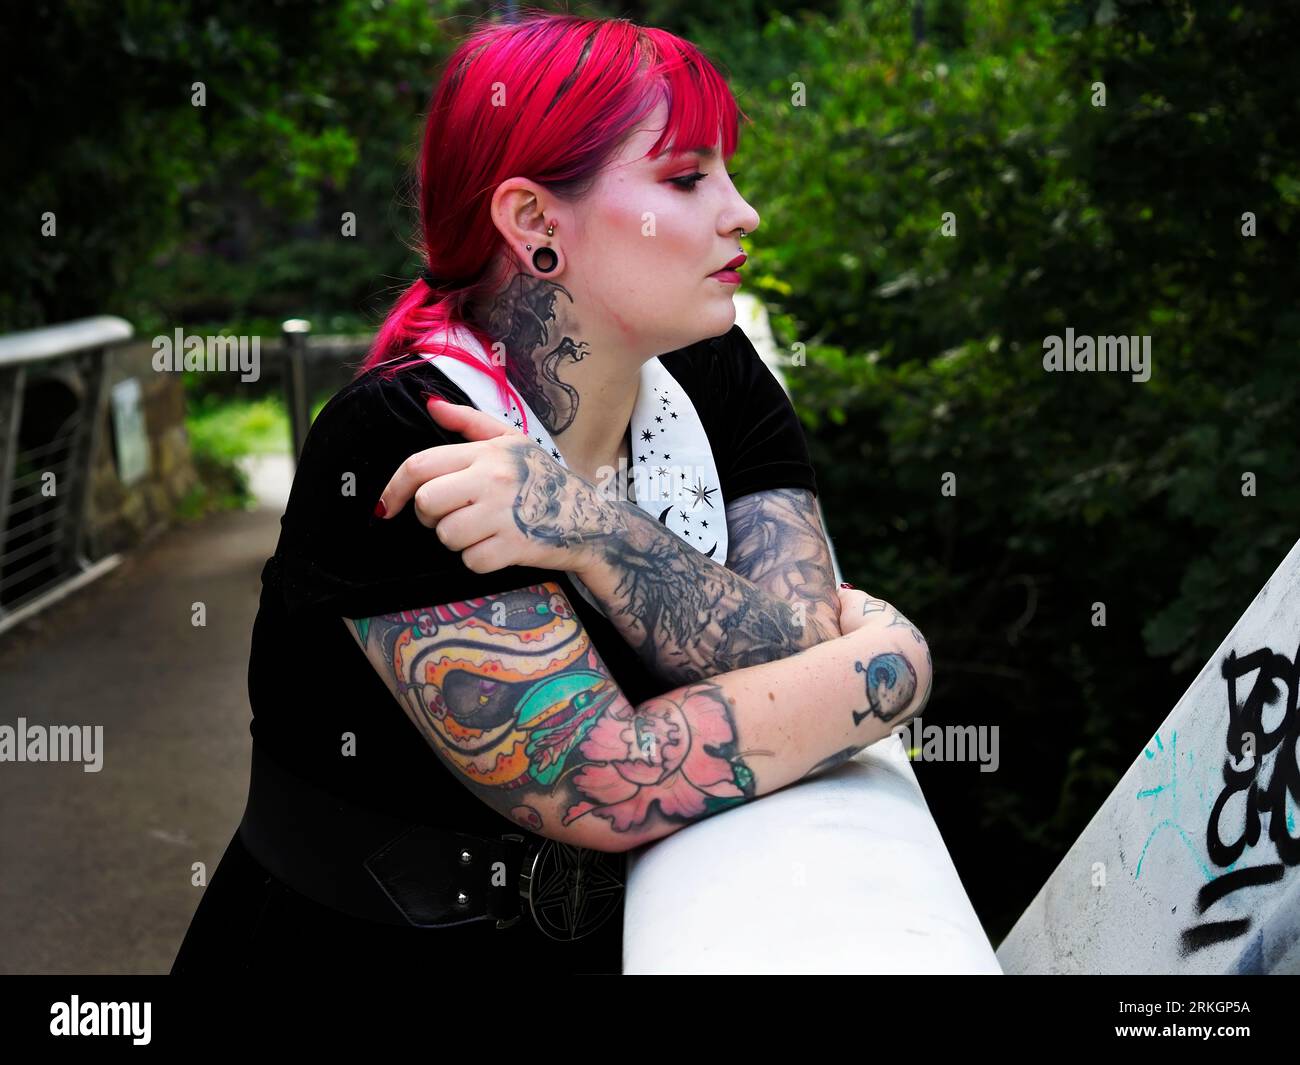 Donna di vent'anni con capelli rossi tinti e tatuaggi appoggiati su una passerella metallica a Leeds, West Yorkshire, Inghilterra Foto Stock